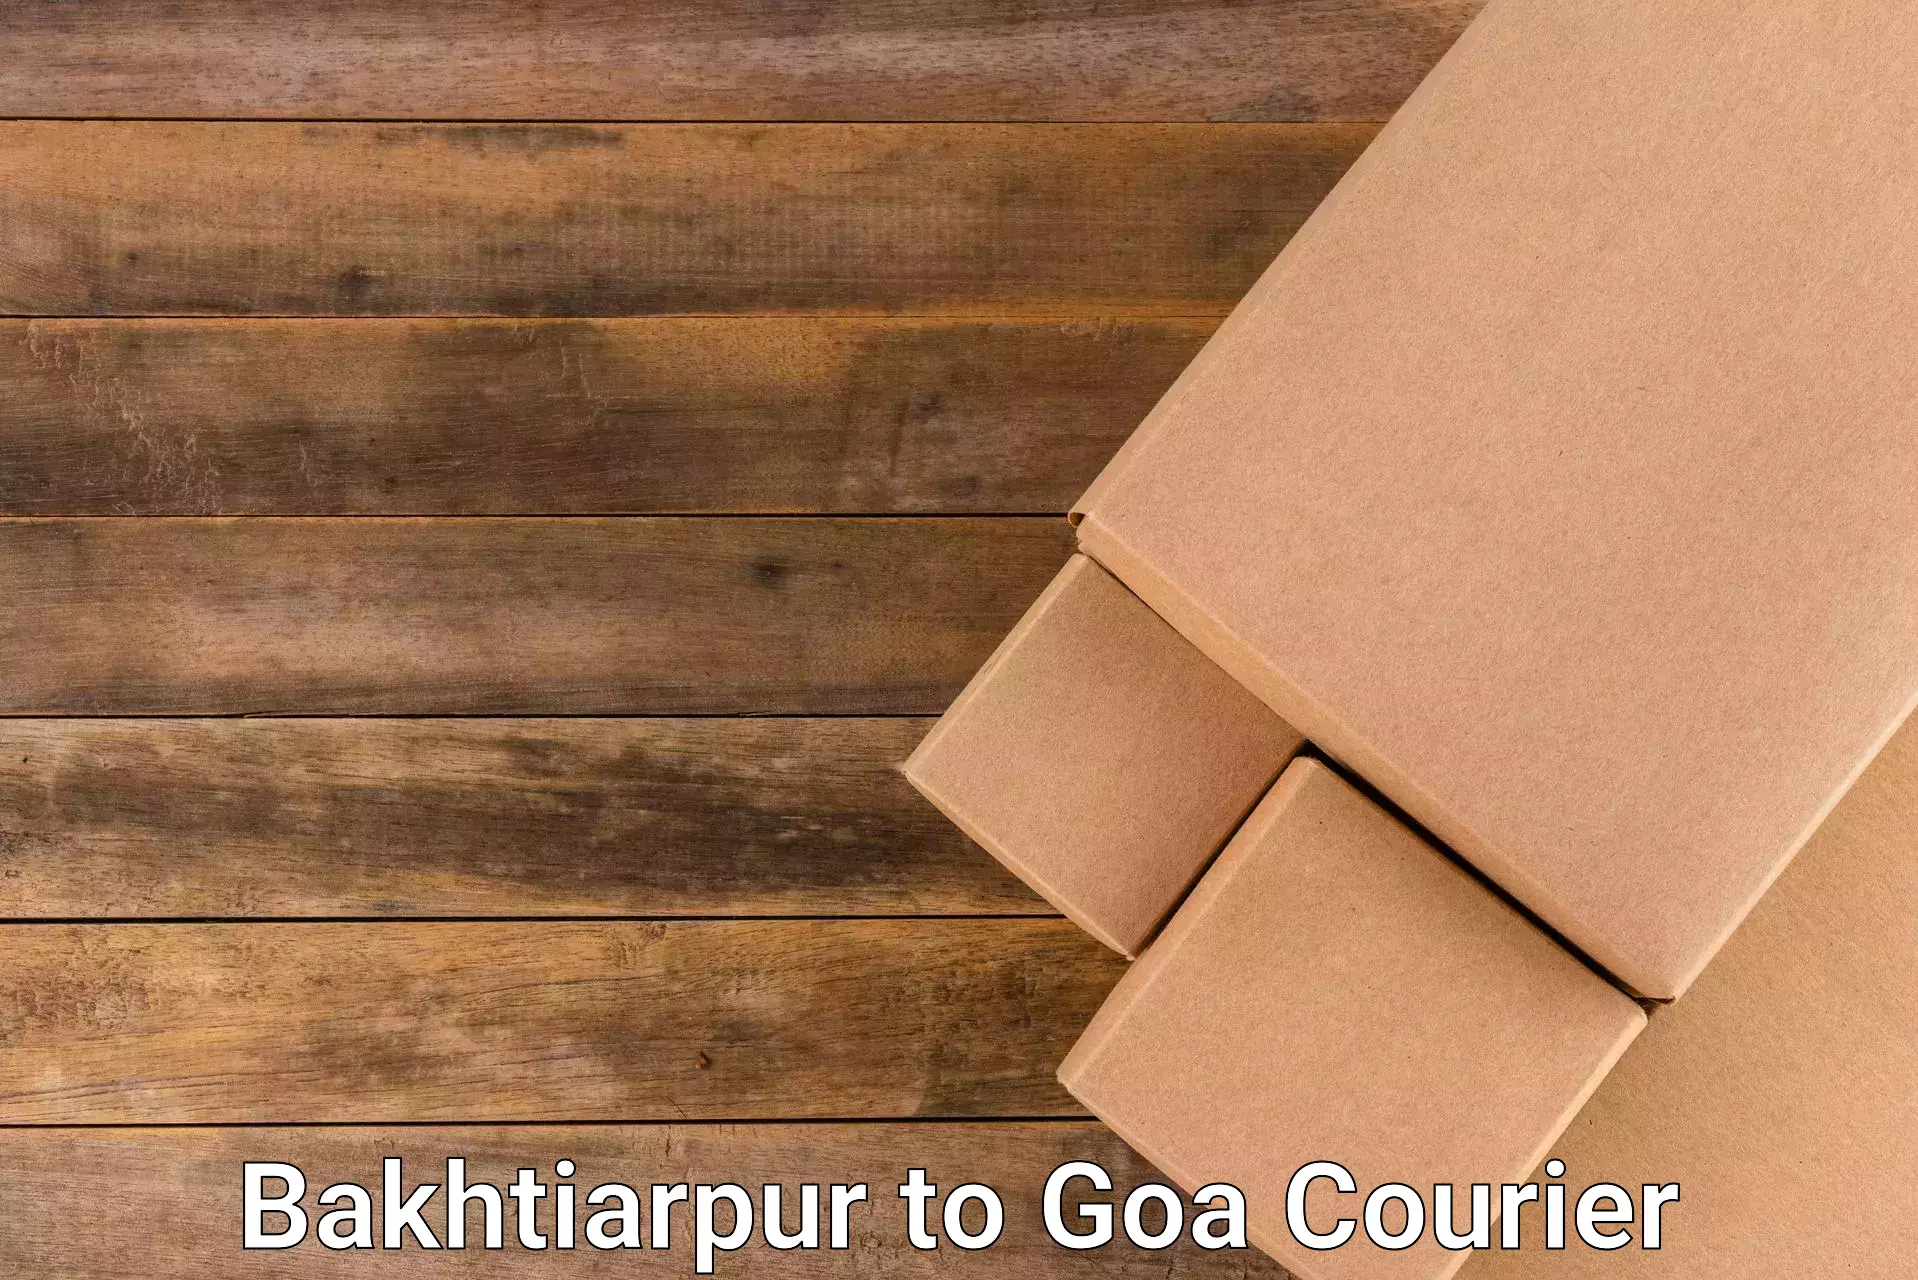 Professional courier handling in Bakhtiarpur to IIT Goa